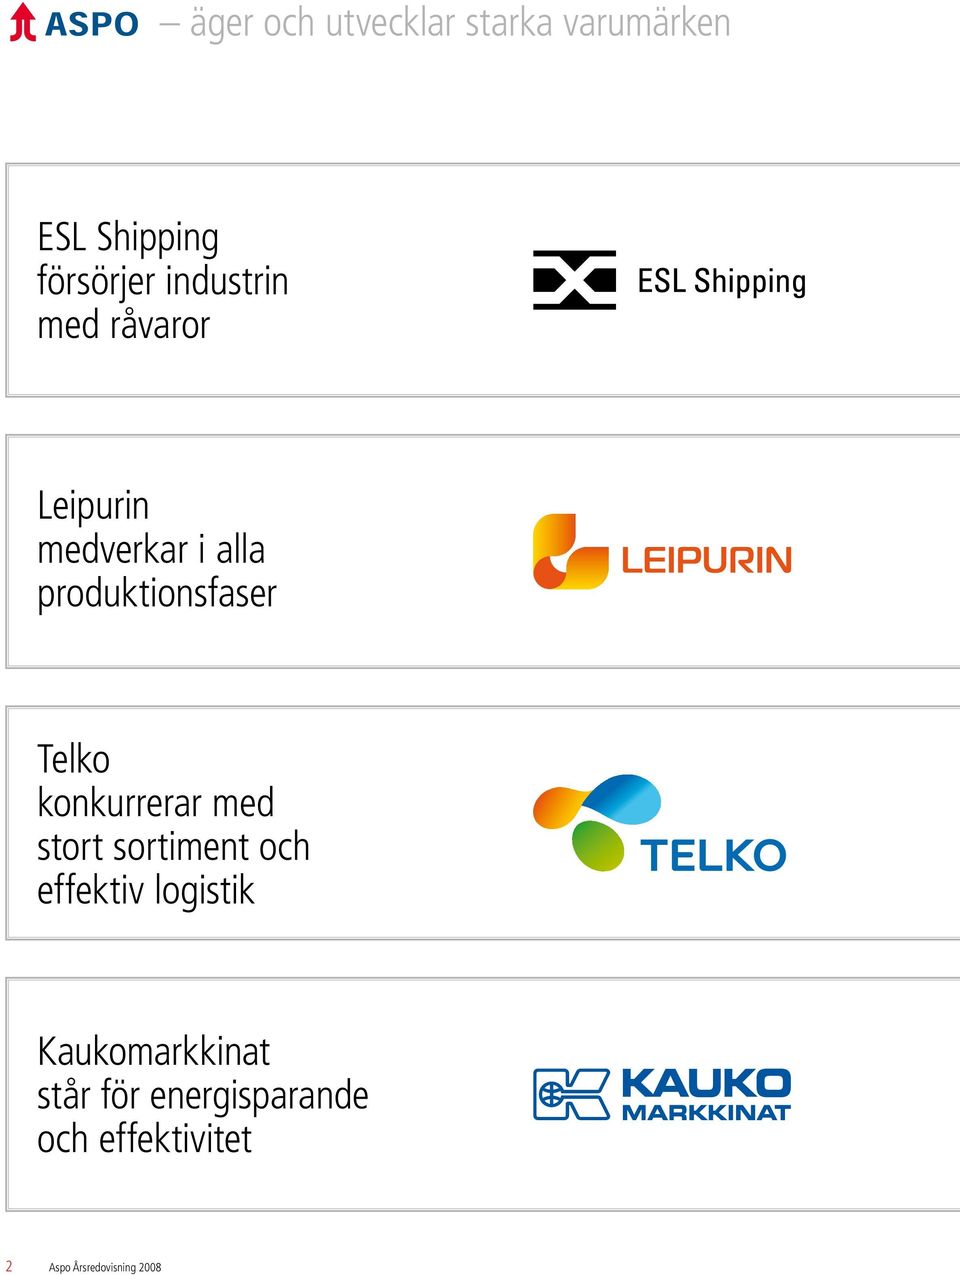 Telko konkurrerar med stort sortiment och effektiv logistik